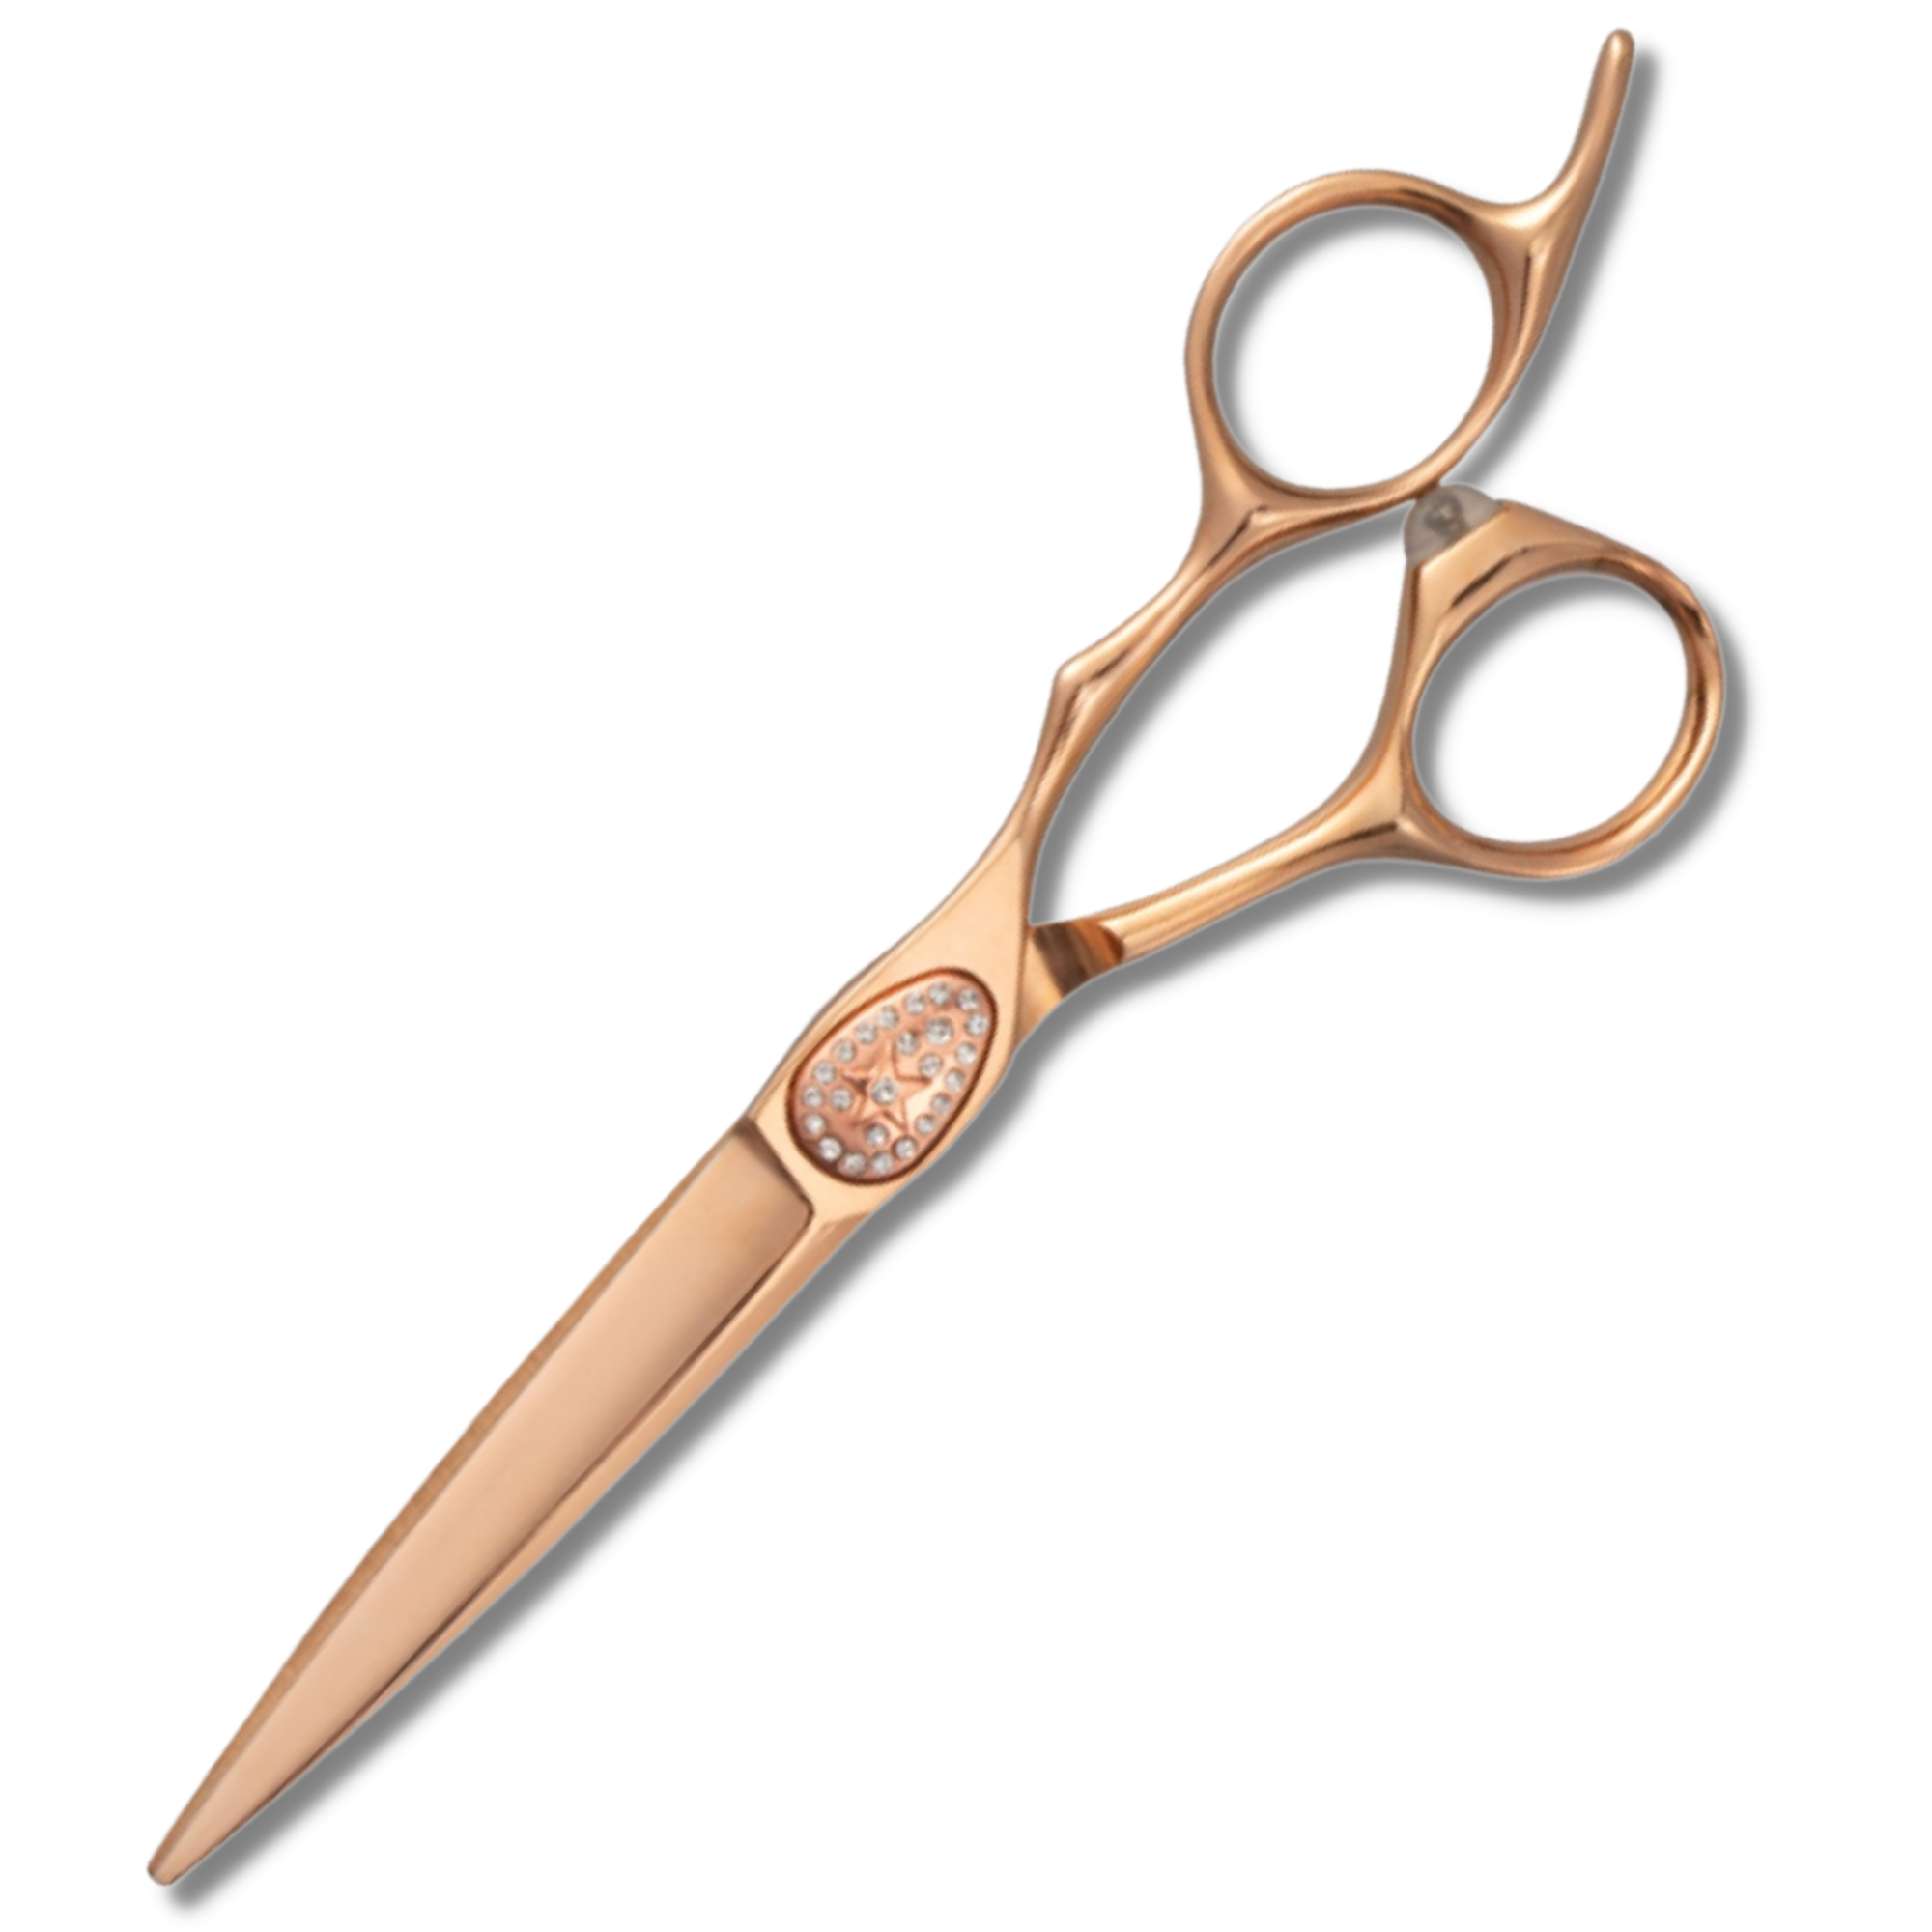 Cesoie/forbici per tagliare i capelli in oro rosa Ikigai